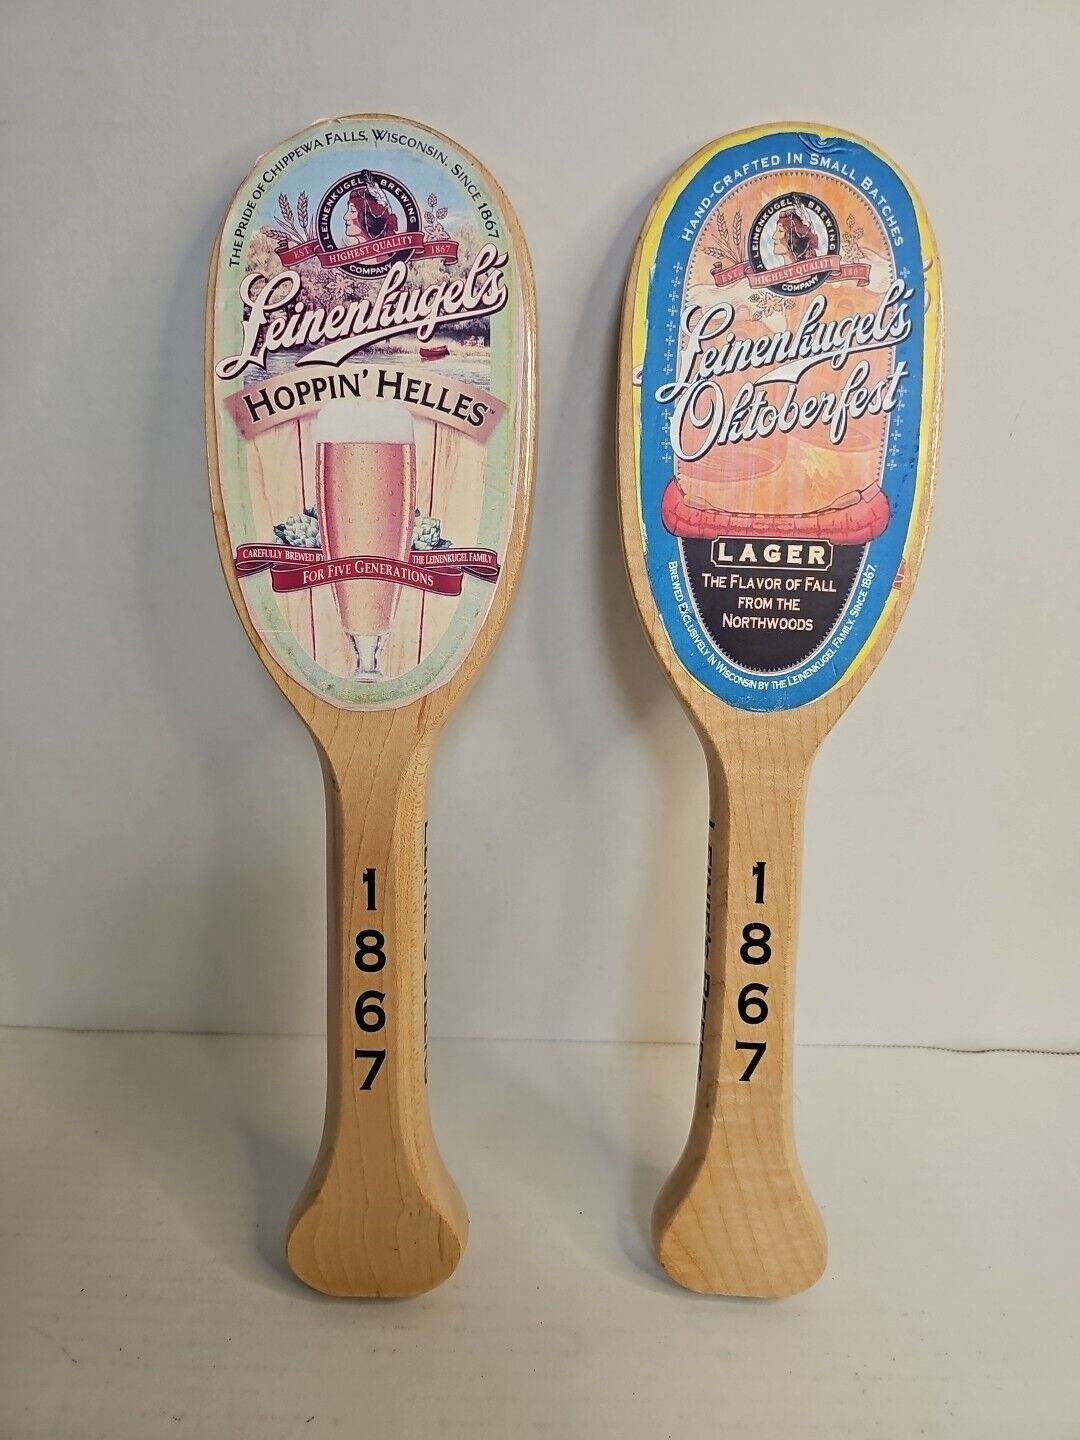 2 Leinenkugel's Draft Beer Tap Handle Canoe Paddle Oktoberfest Hoppin' Helles